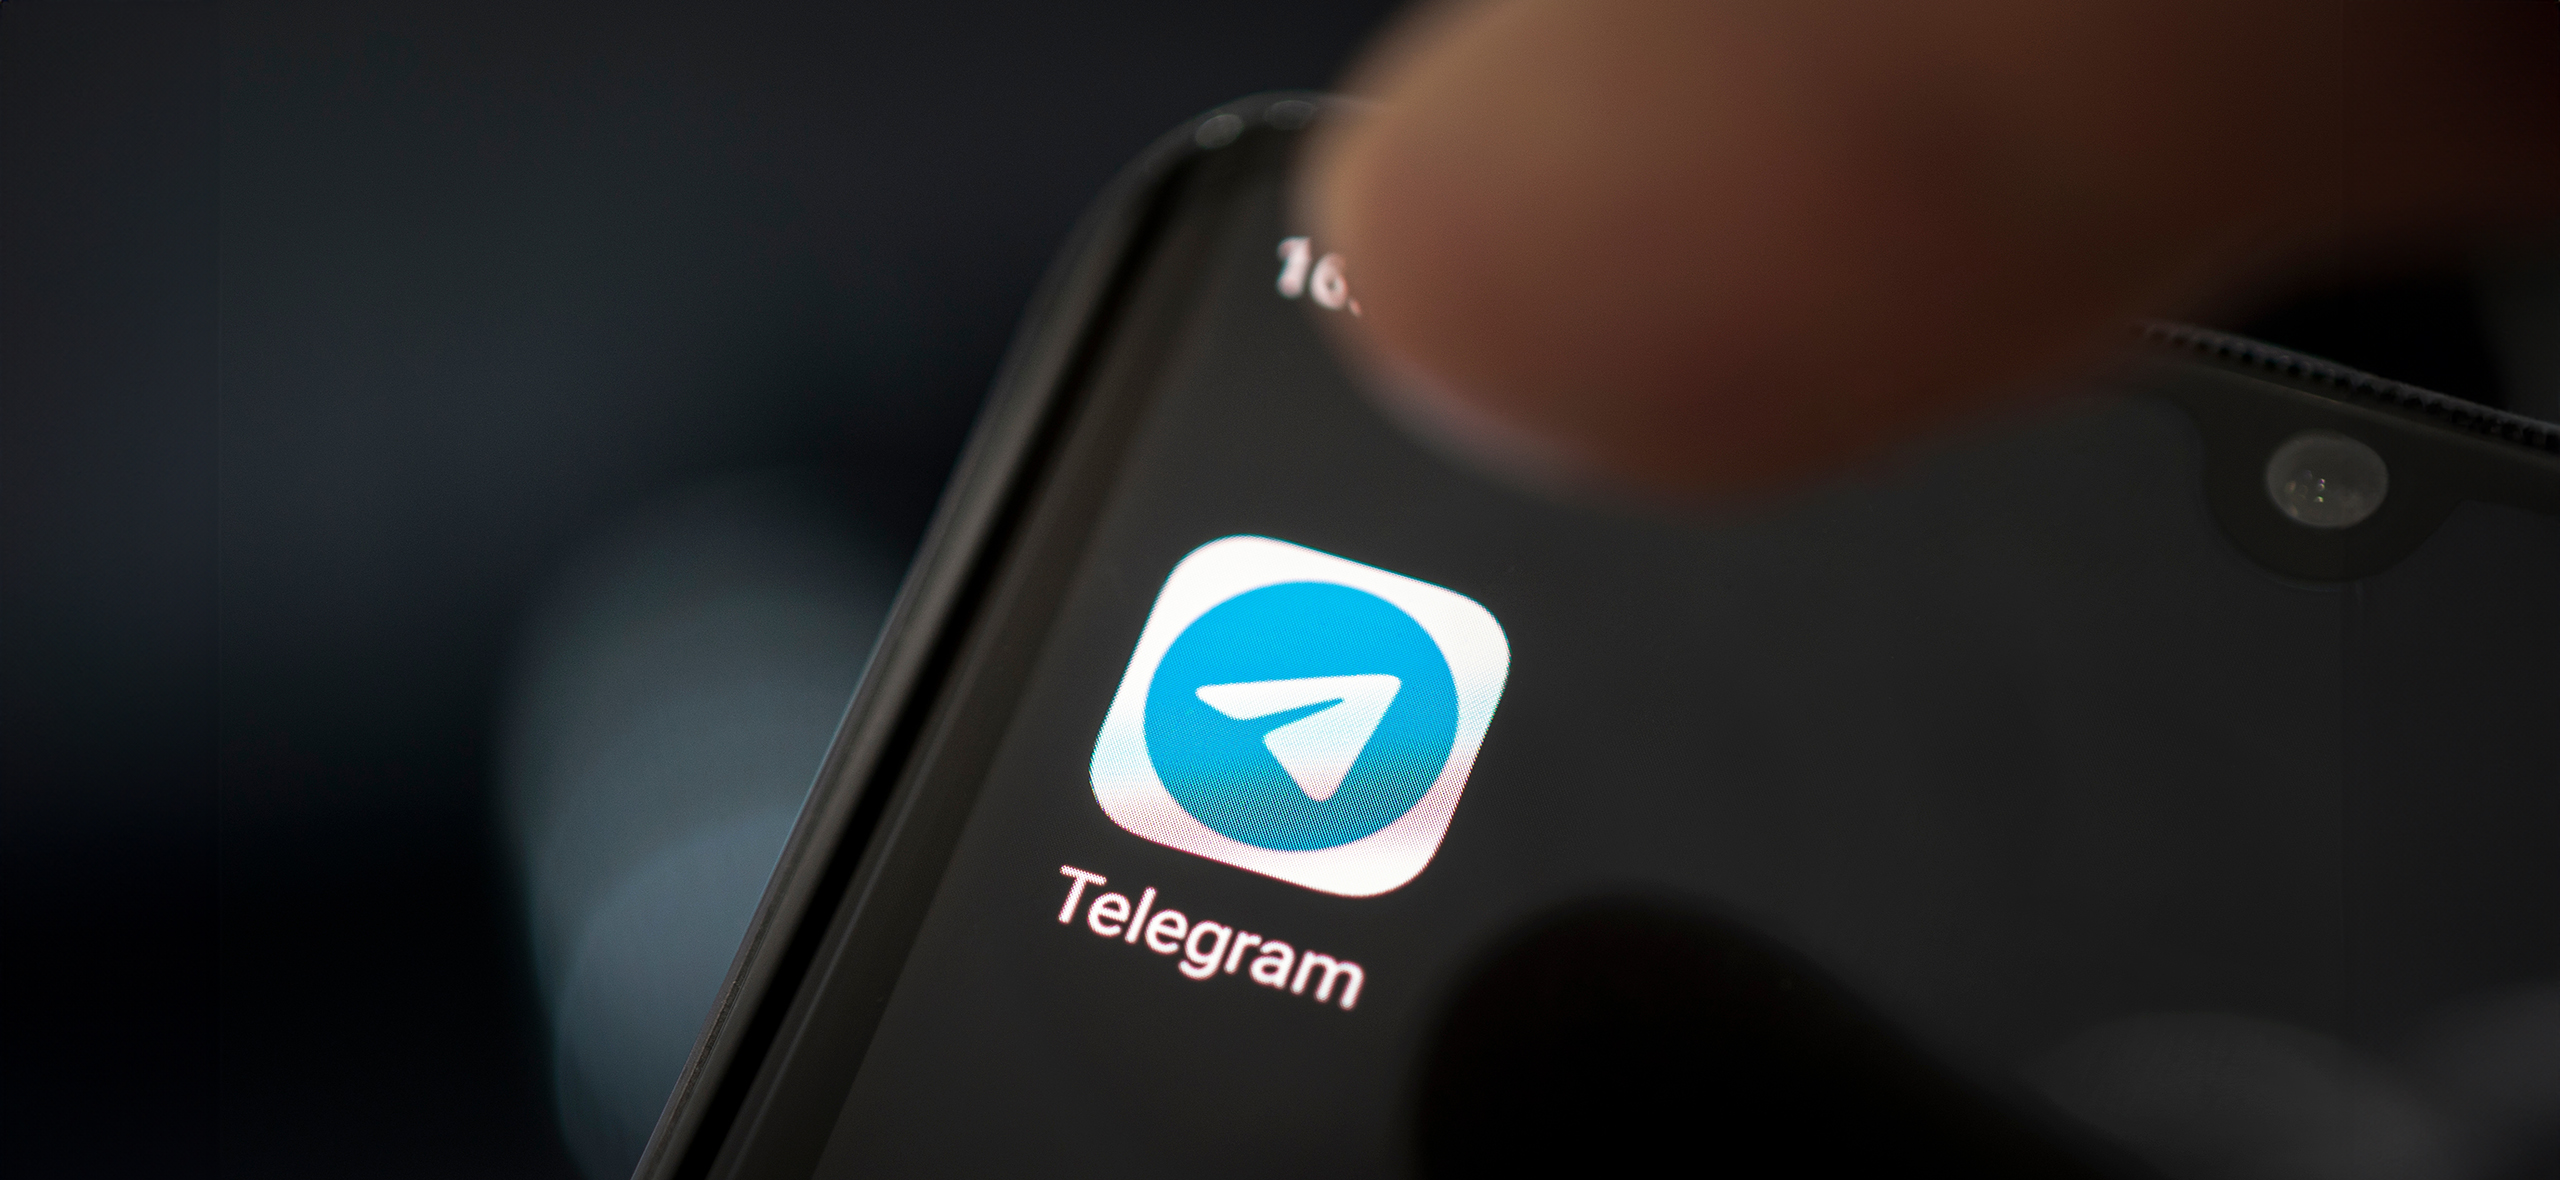 Архив в «Телеграме»: где его найти и как разобраться